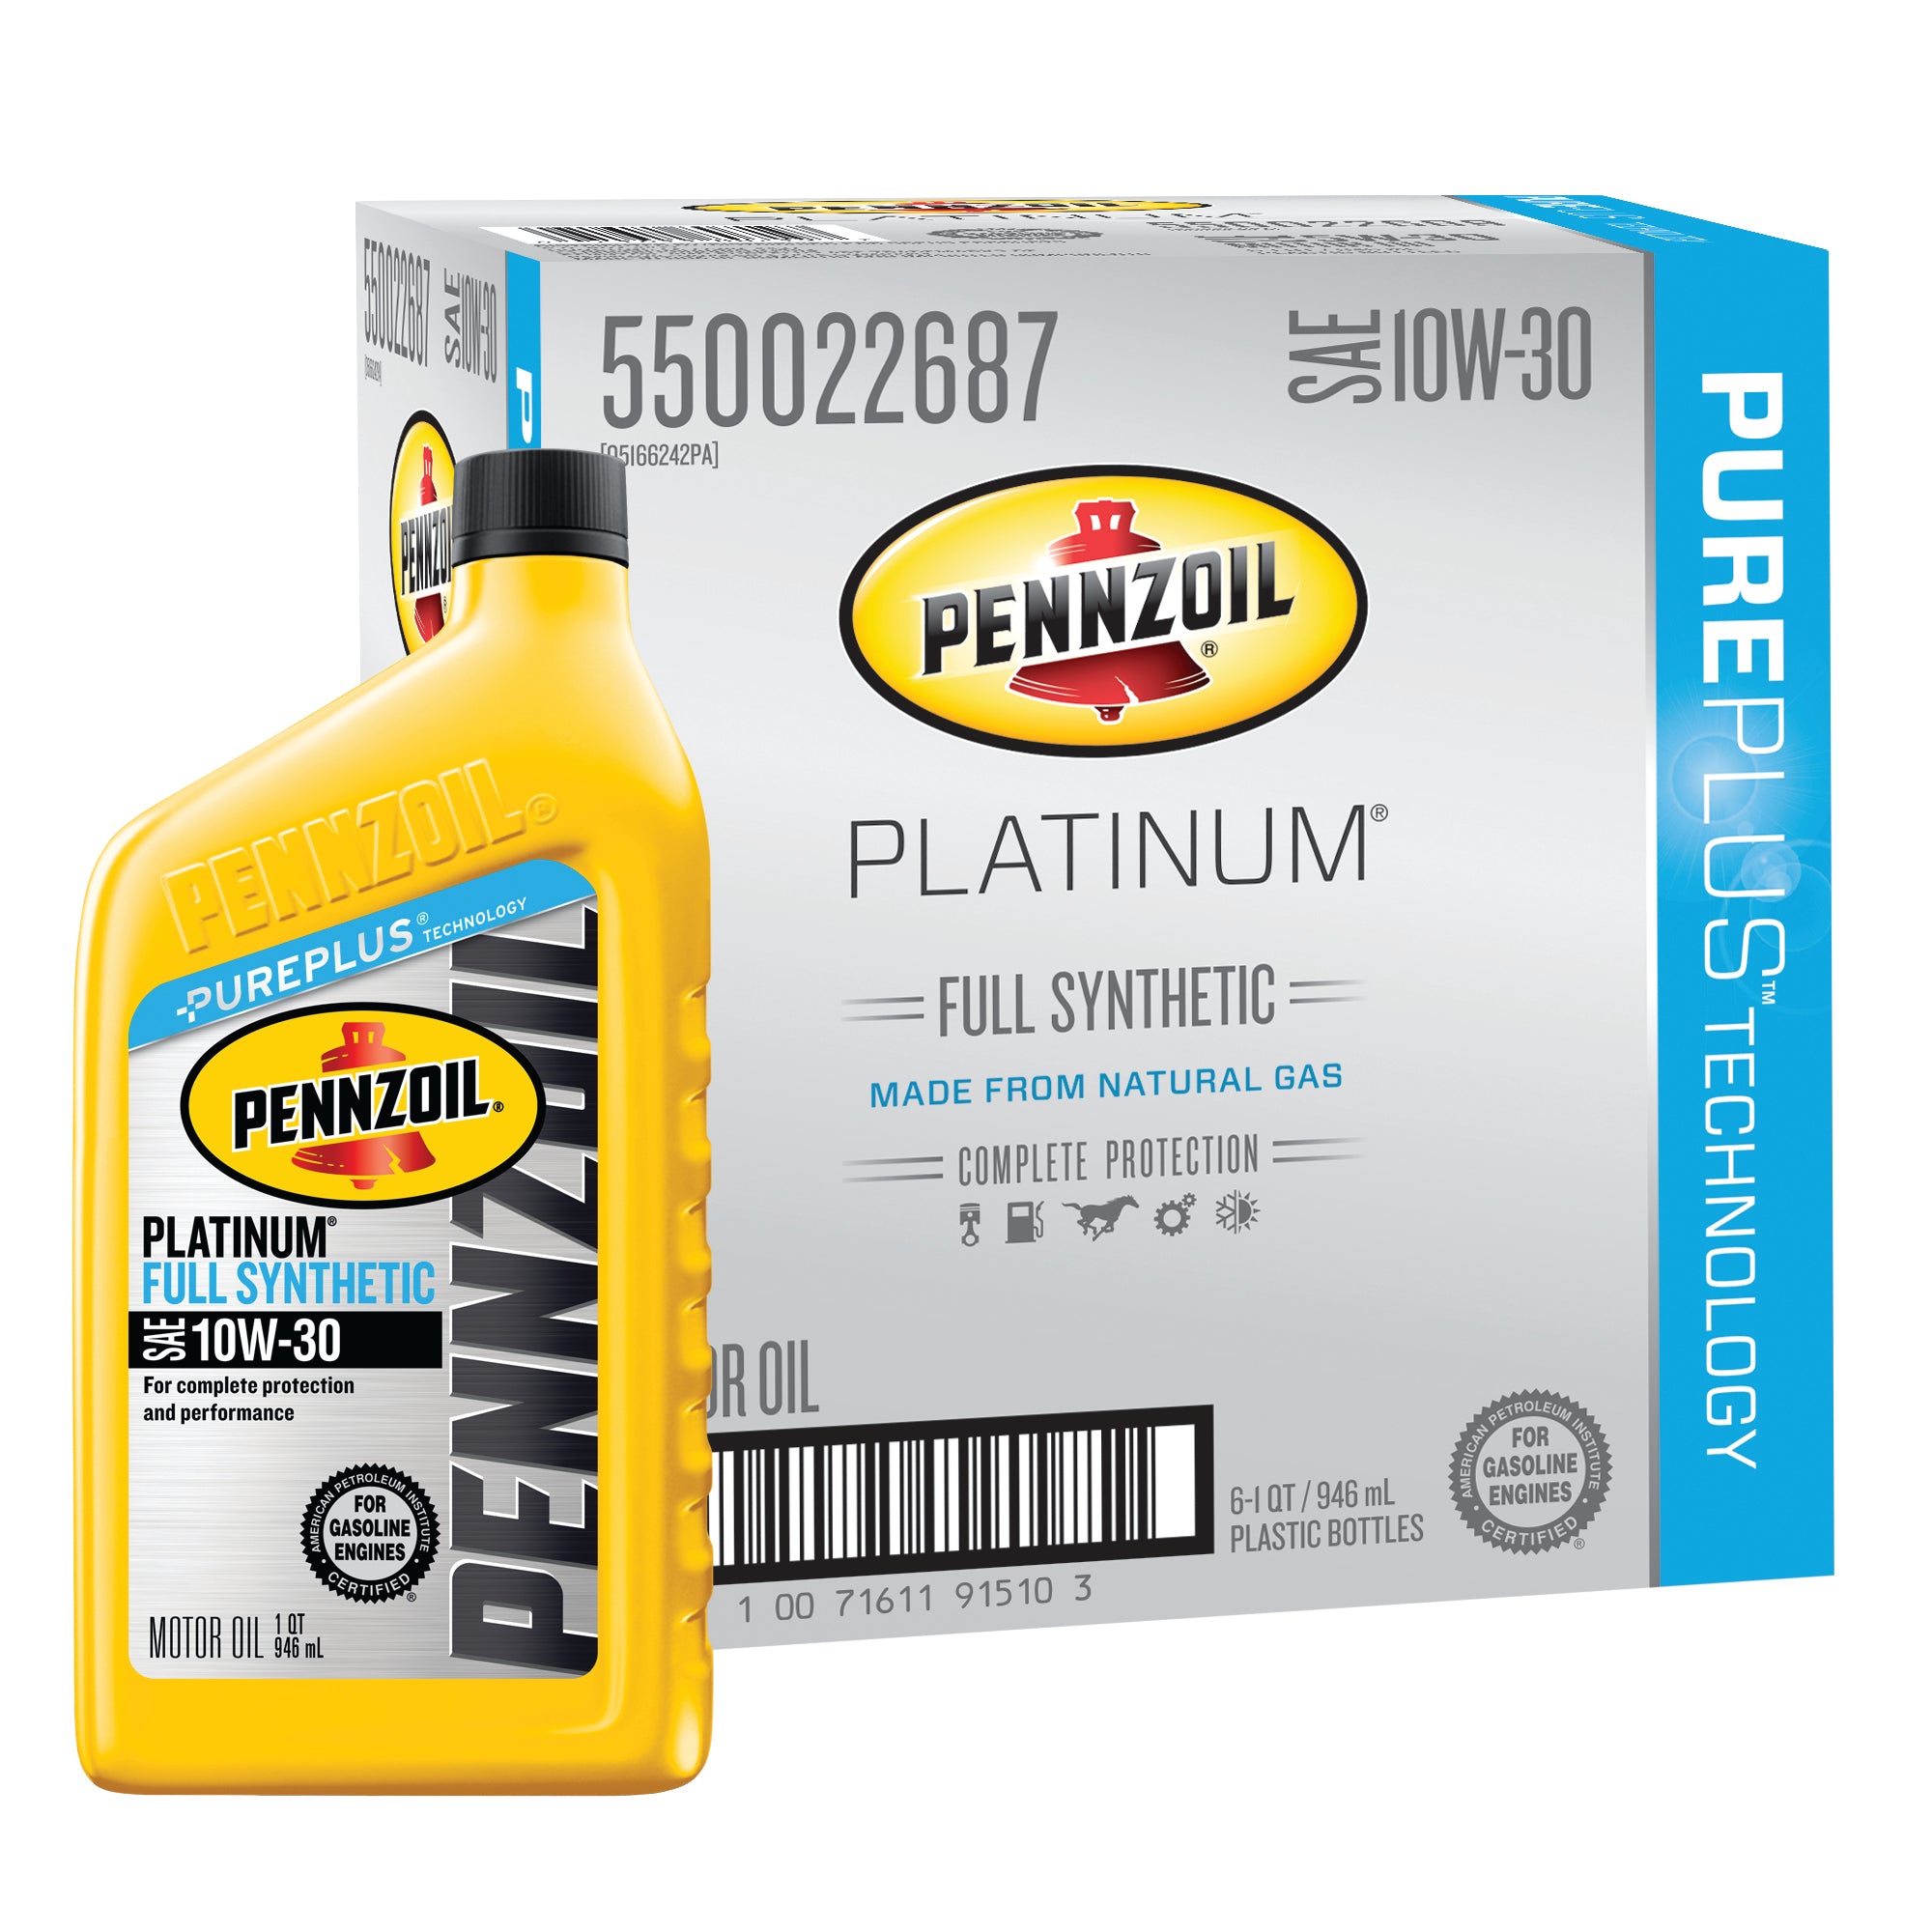 Pennzoil Platinum SAE 10W 30 Full Synthetic Motor Oil Case of 6 1 qt